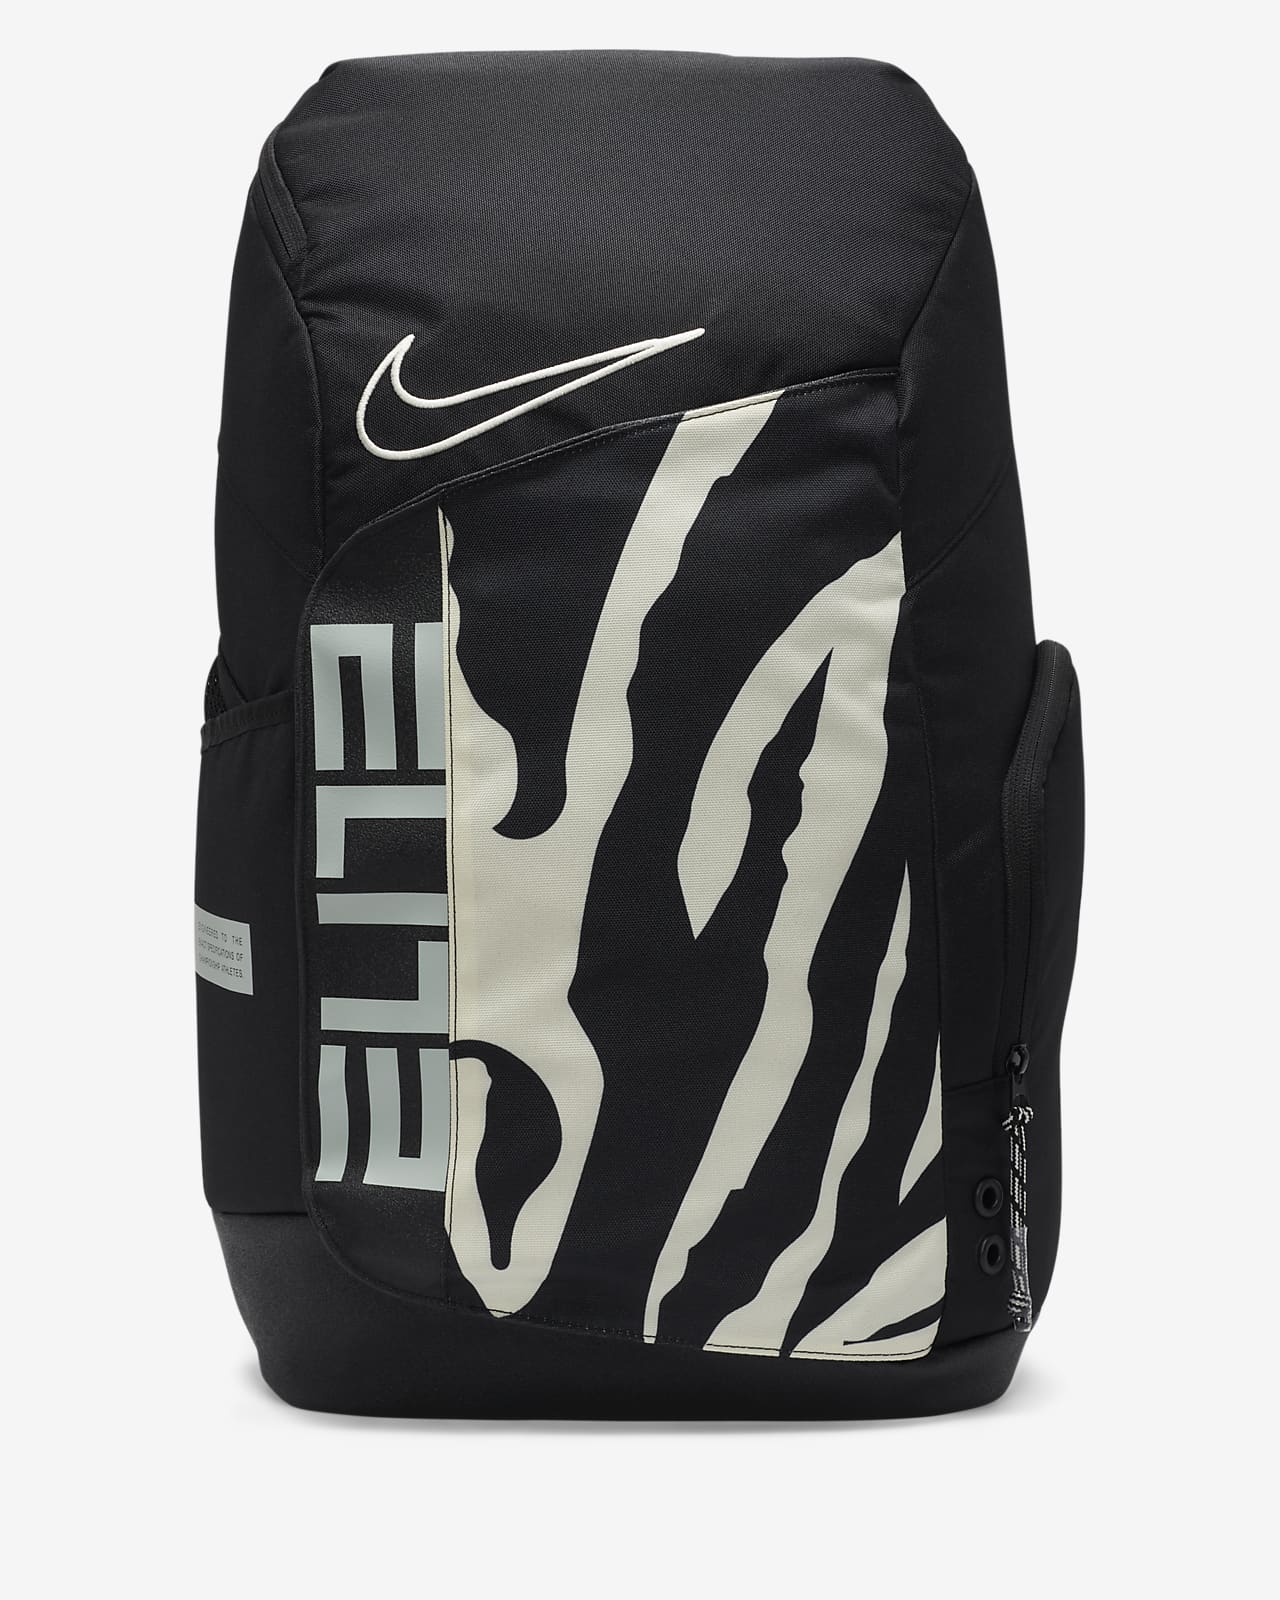 Mochila Nike Hoops Elite Pro (32 L). Nike MX